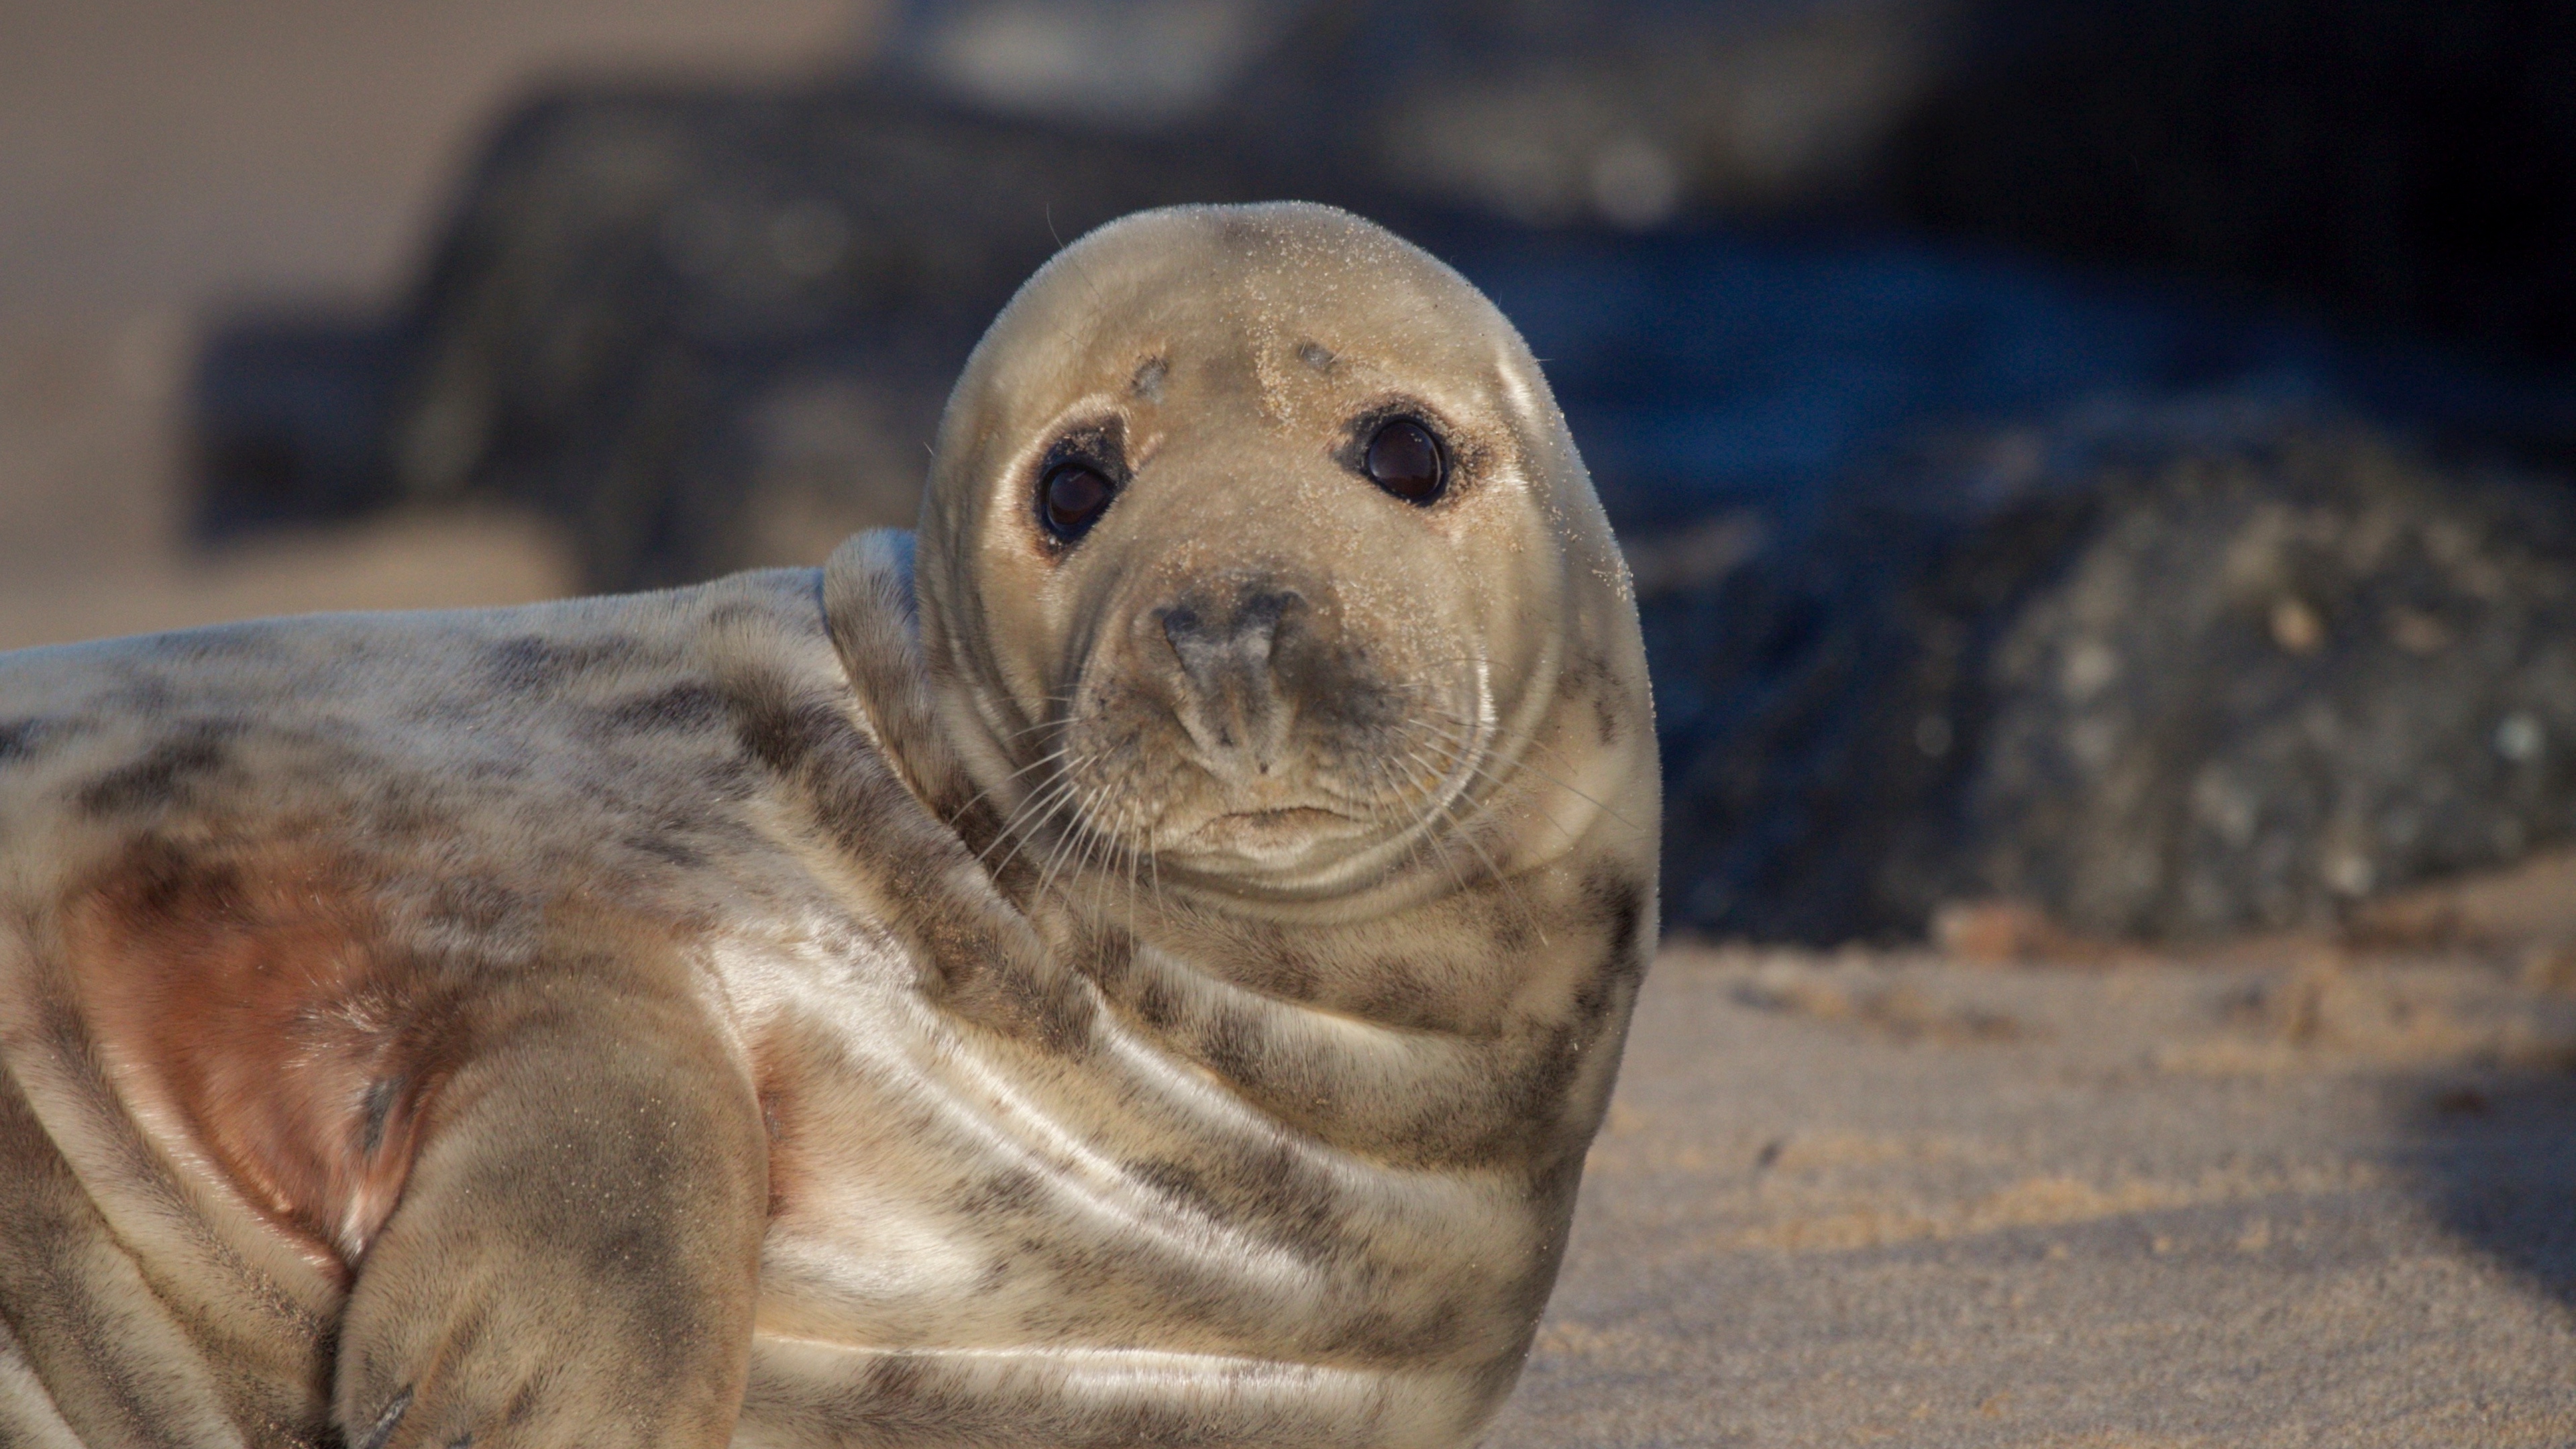 fur seal look cute 4k 1542242991 - fur seal, look, cute 4k - look, fur seal, Cute